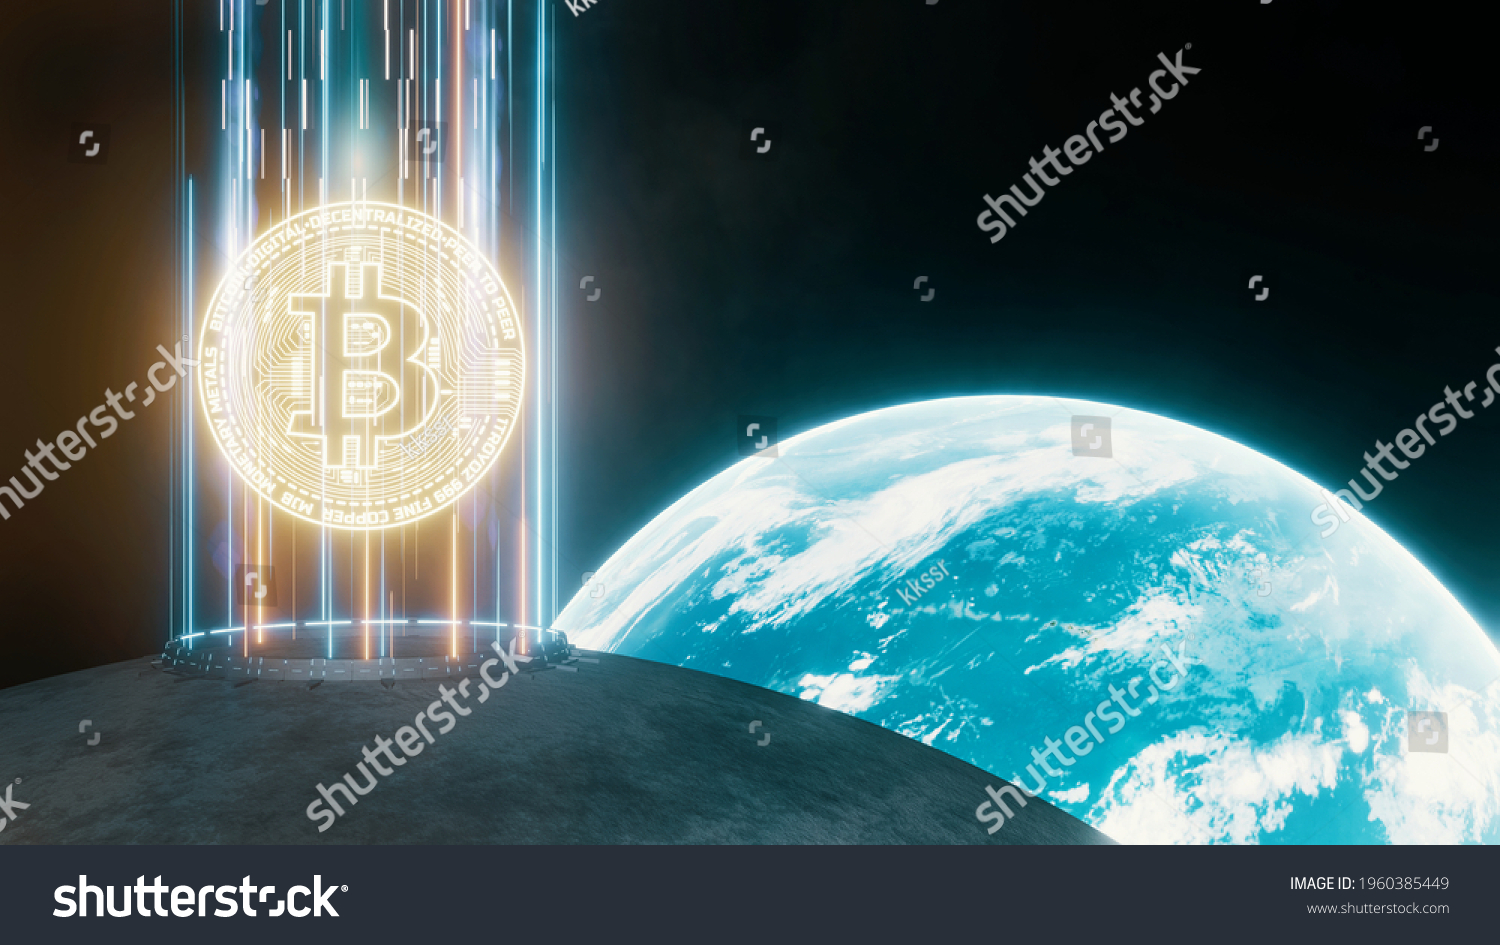 Btc moon btcm how to buy bitcoins via mpesa